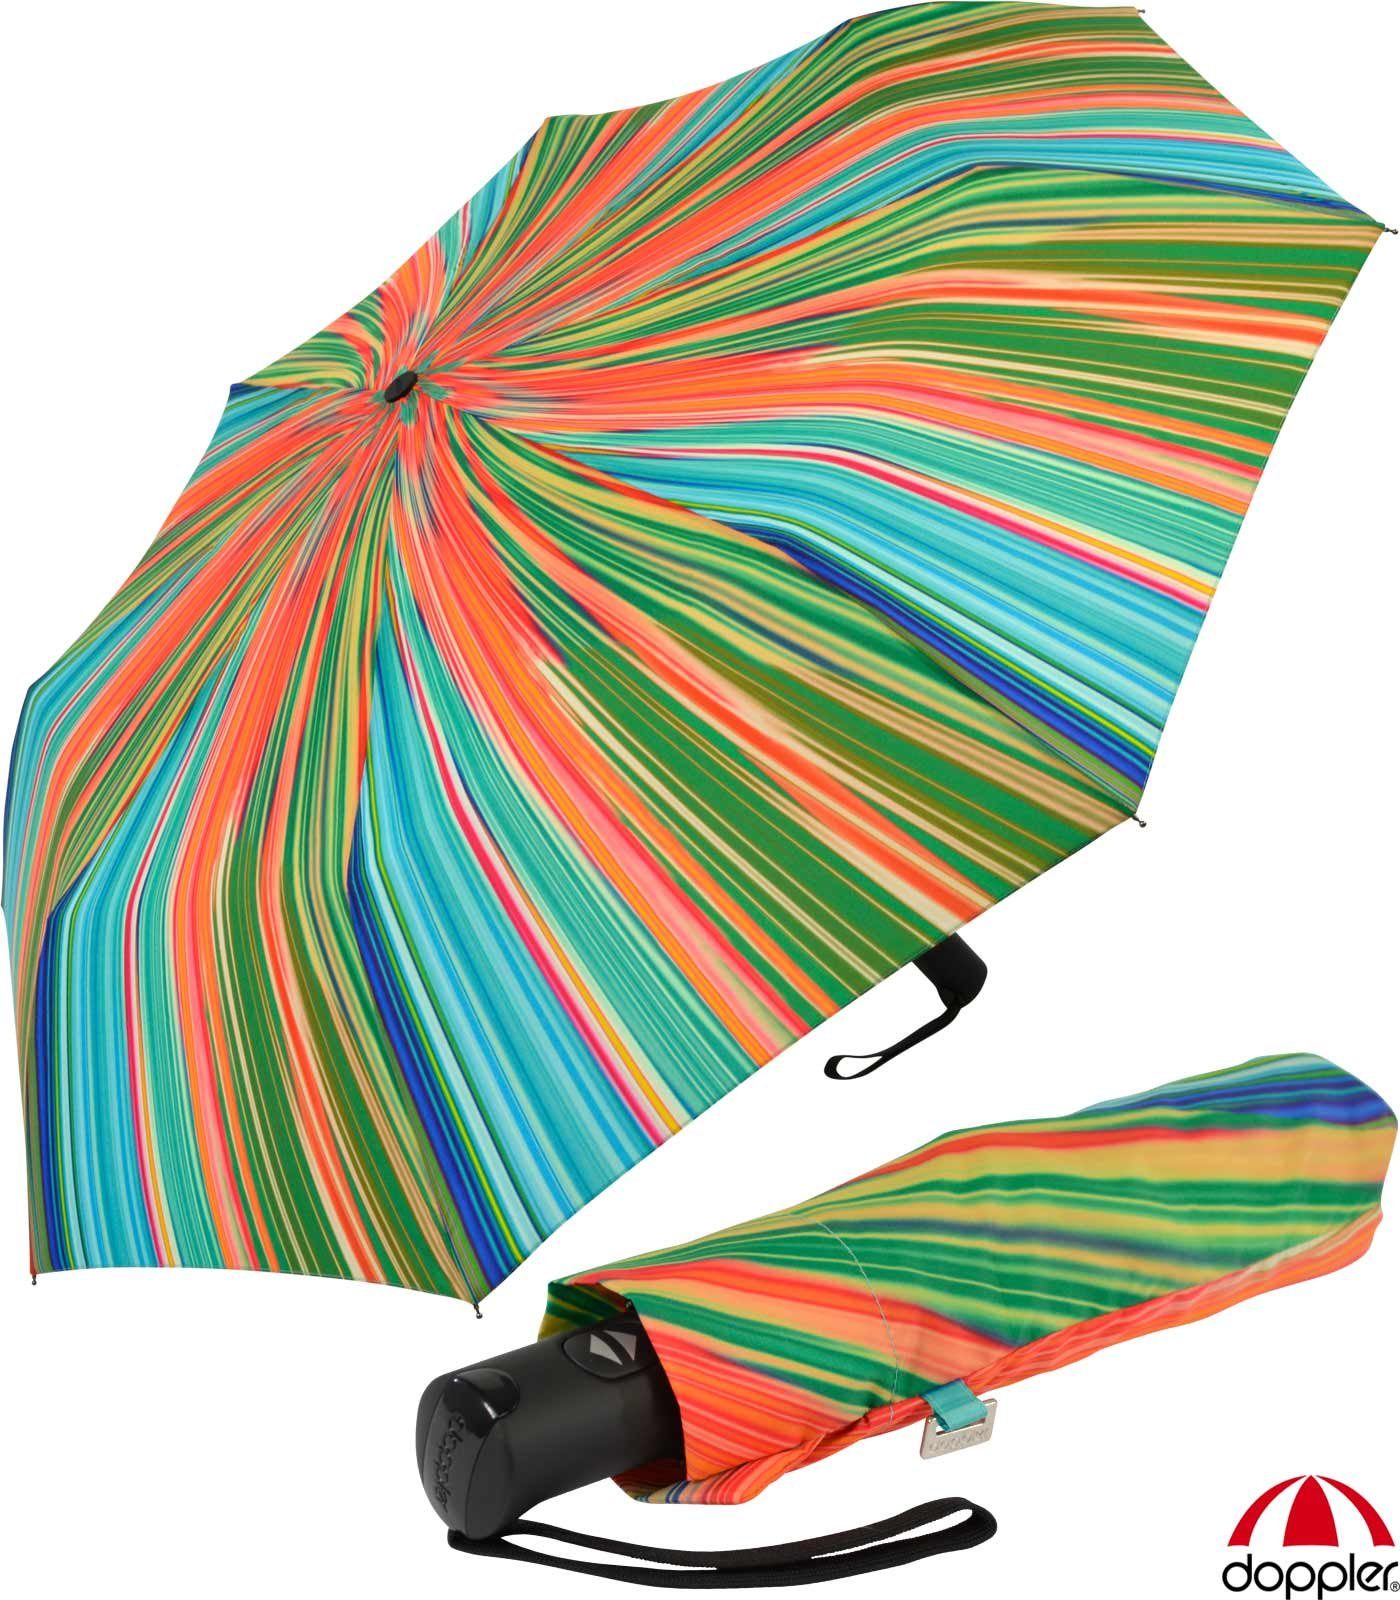 Reisegepäck Taschenregenschirm oder für Schirm mit Auf-Zu-Automatik, ideal Handtasche praktischer, türkis-orange doppler® leichter